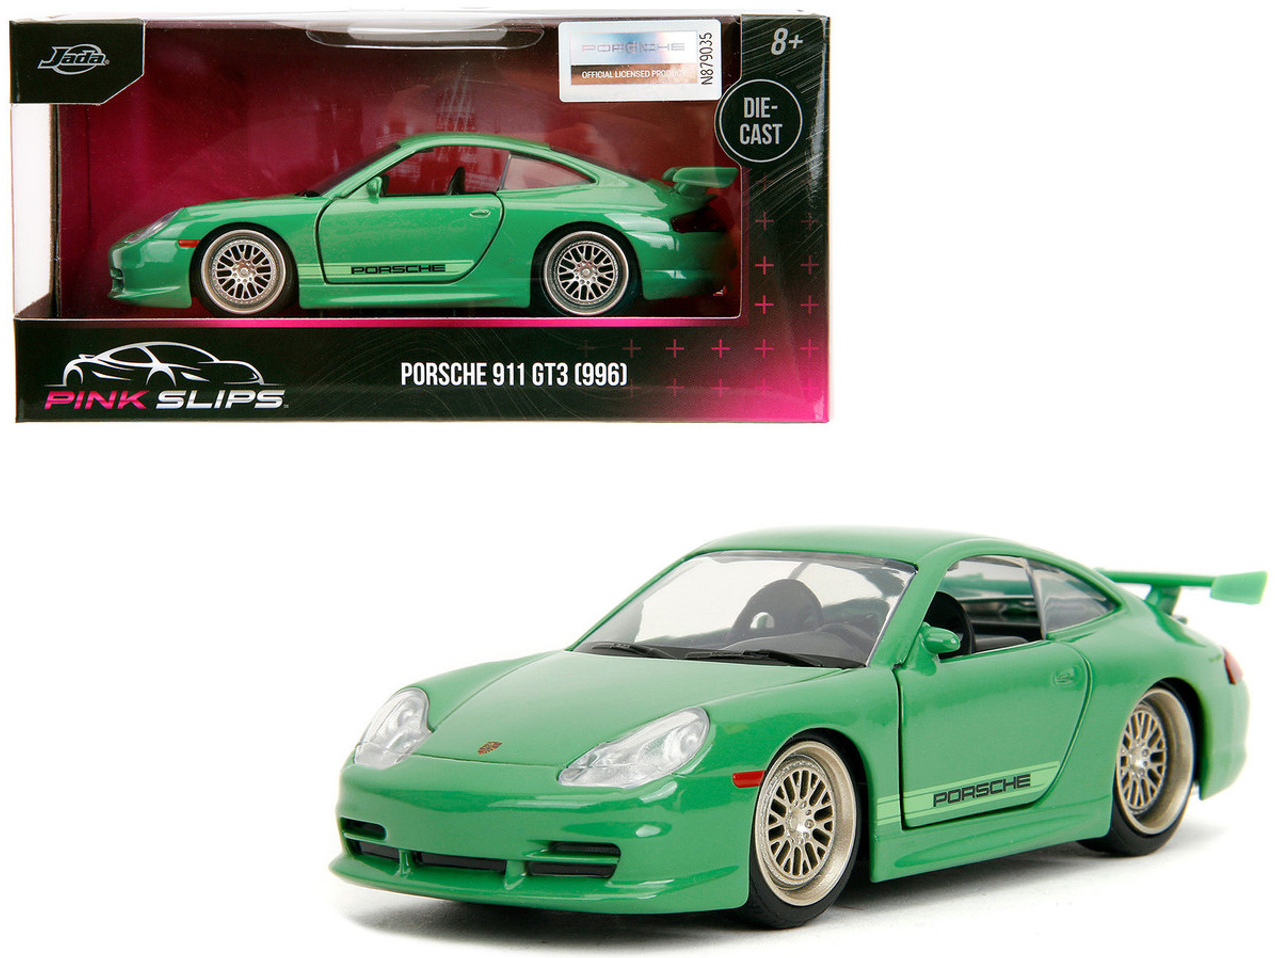 Porsche 911 Gt3 996 green 1/32